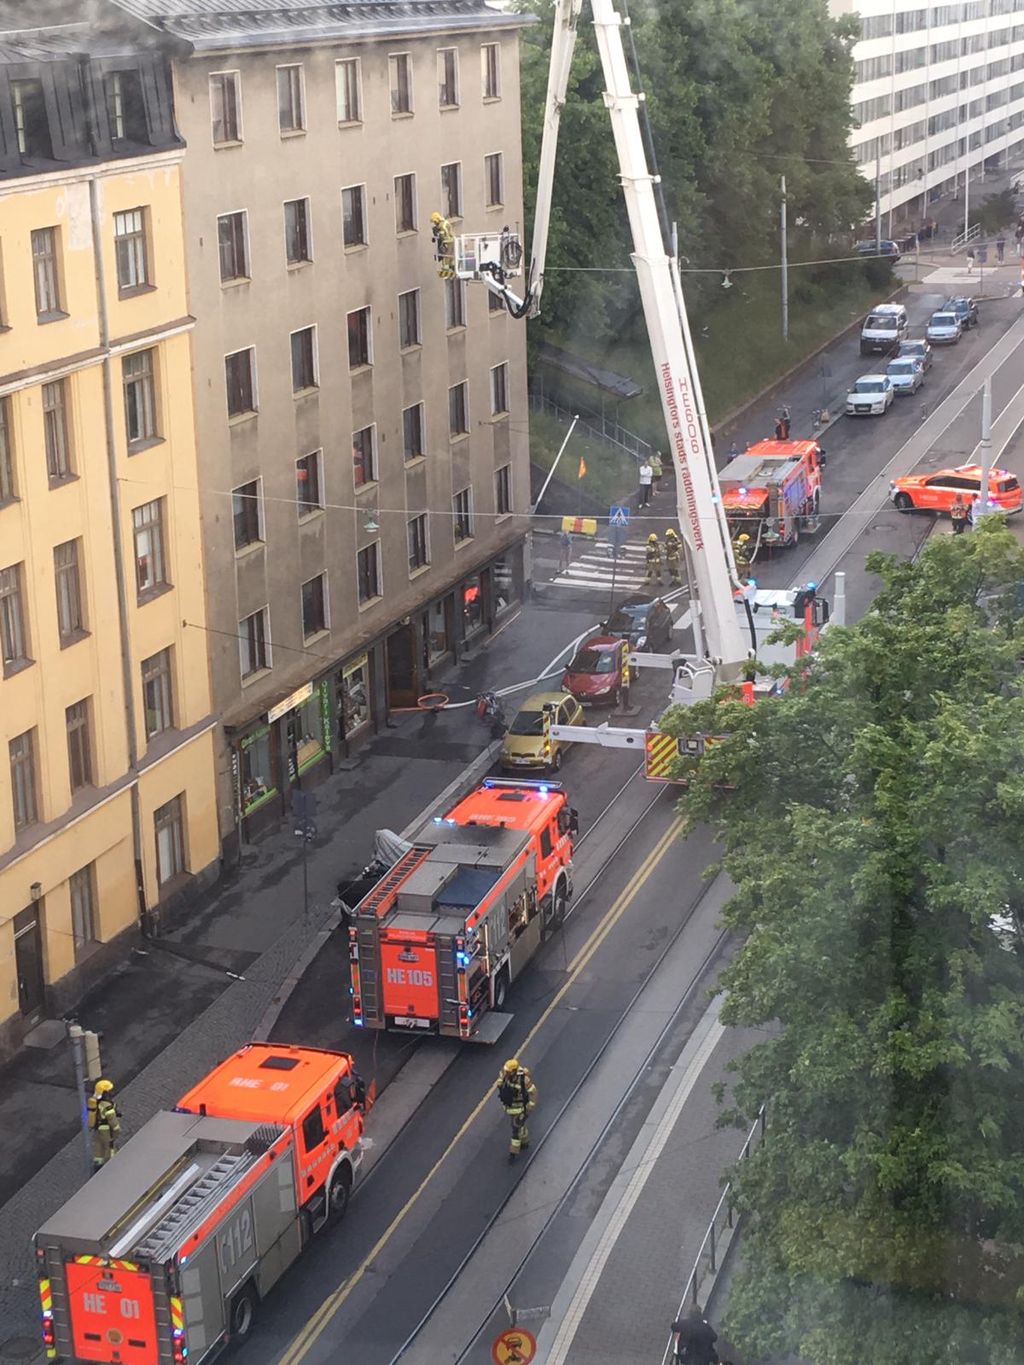 Yksiö tuhoutui asuinkelvottomaksi Helsingin Alppiharjussa – palo sai alkunsa keittiöstä